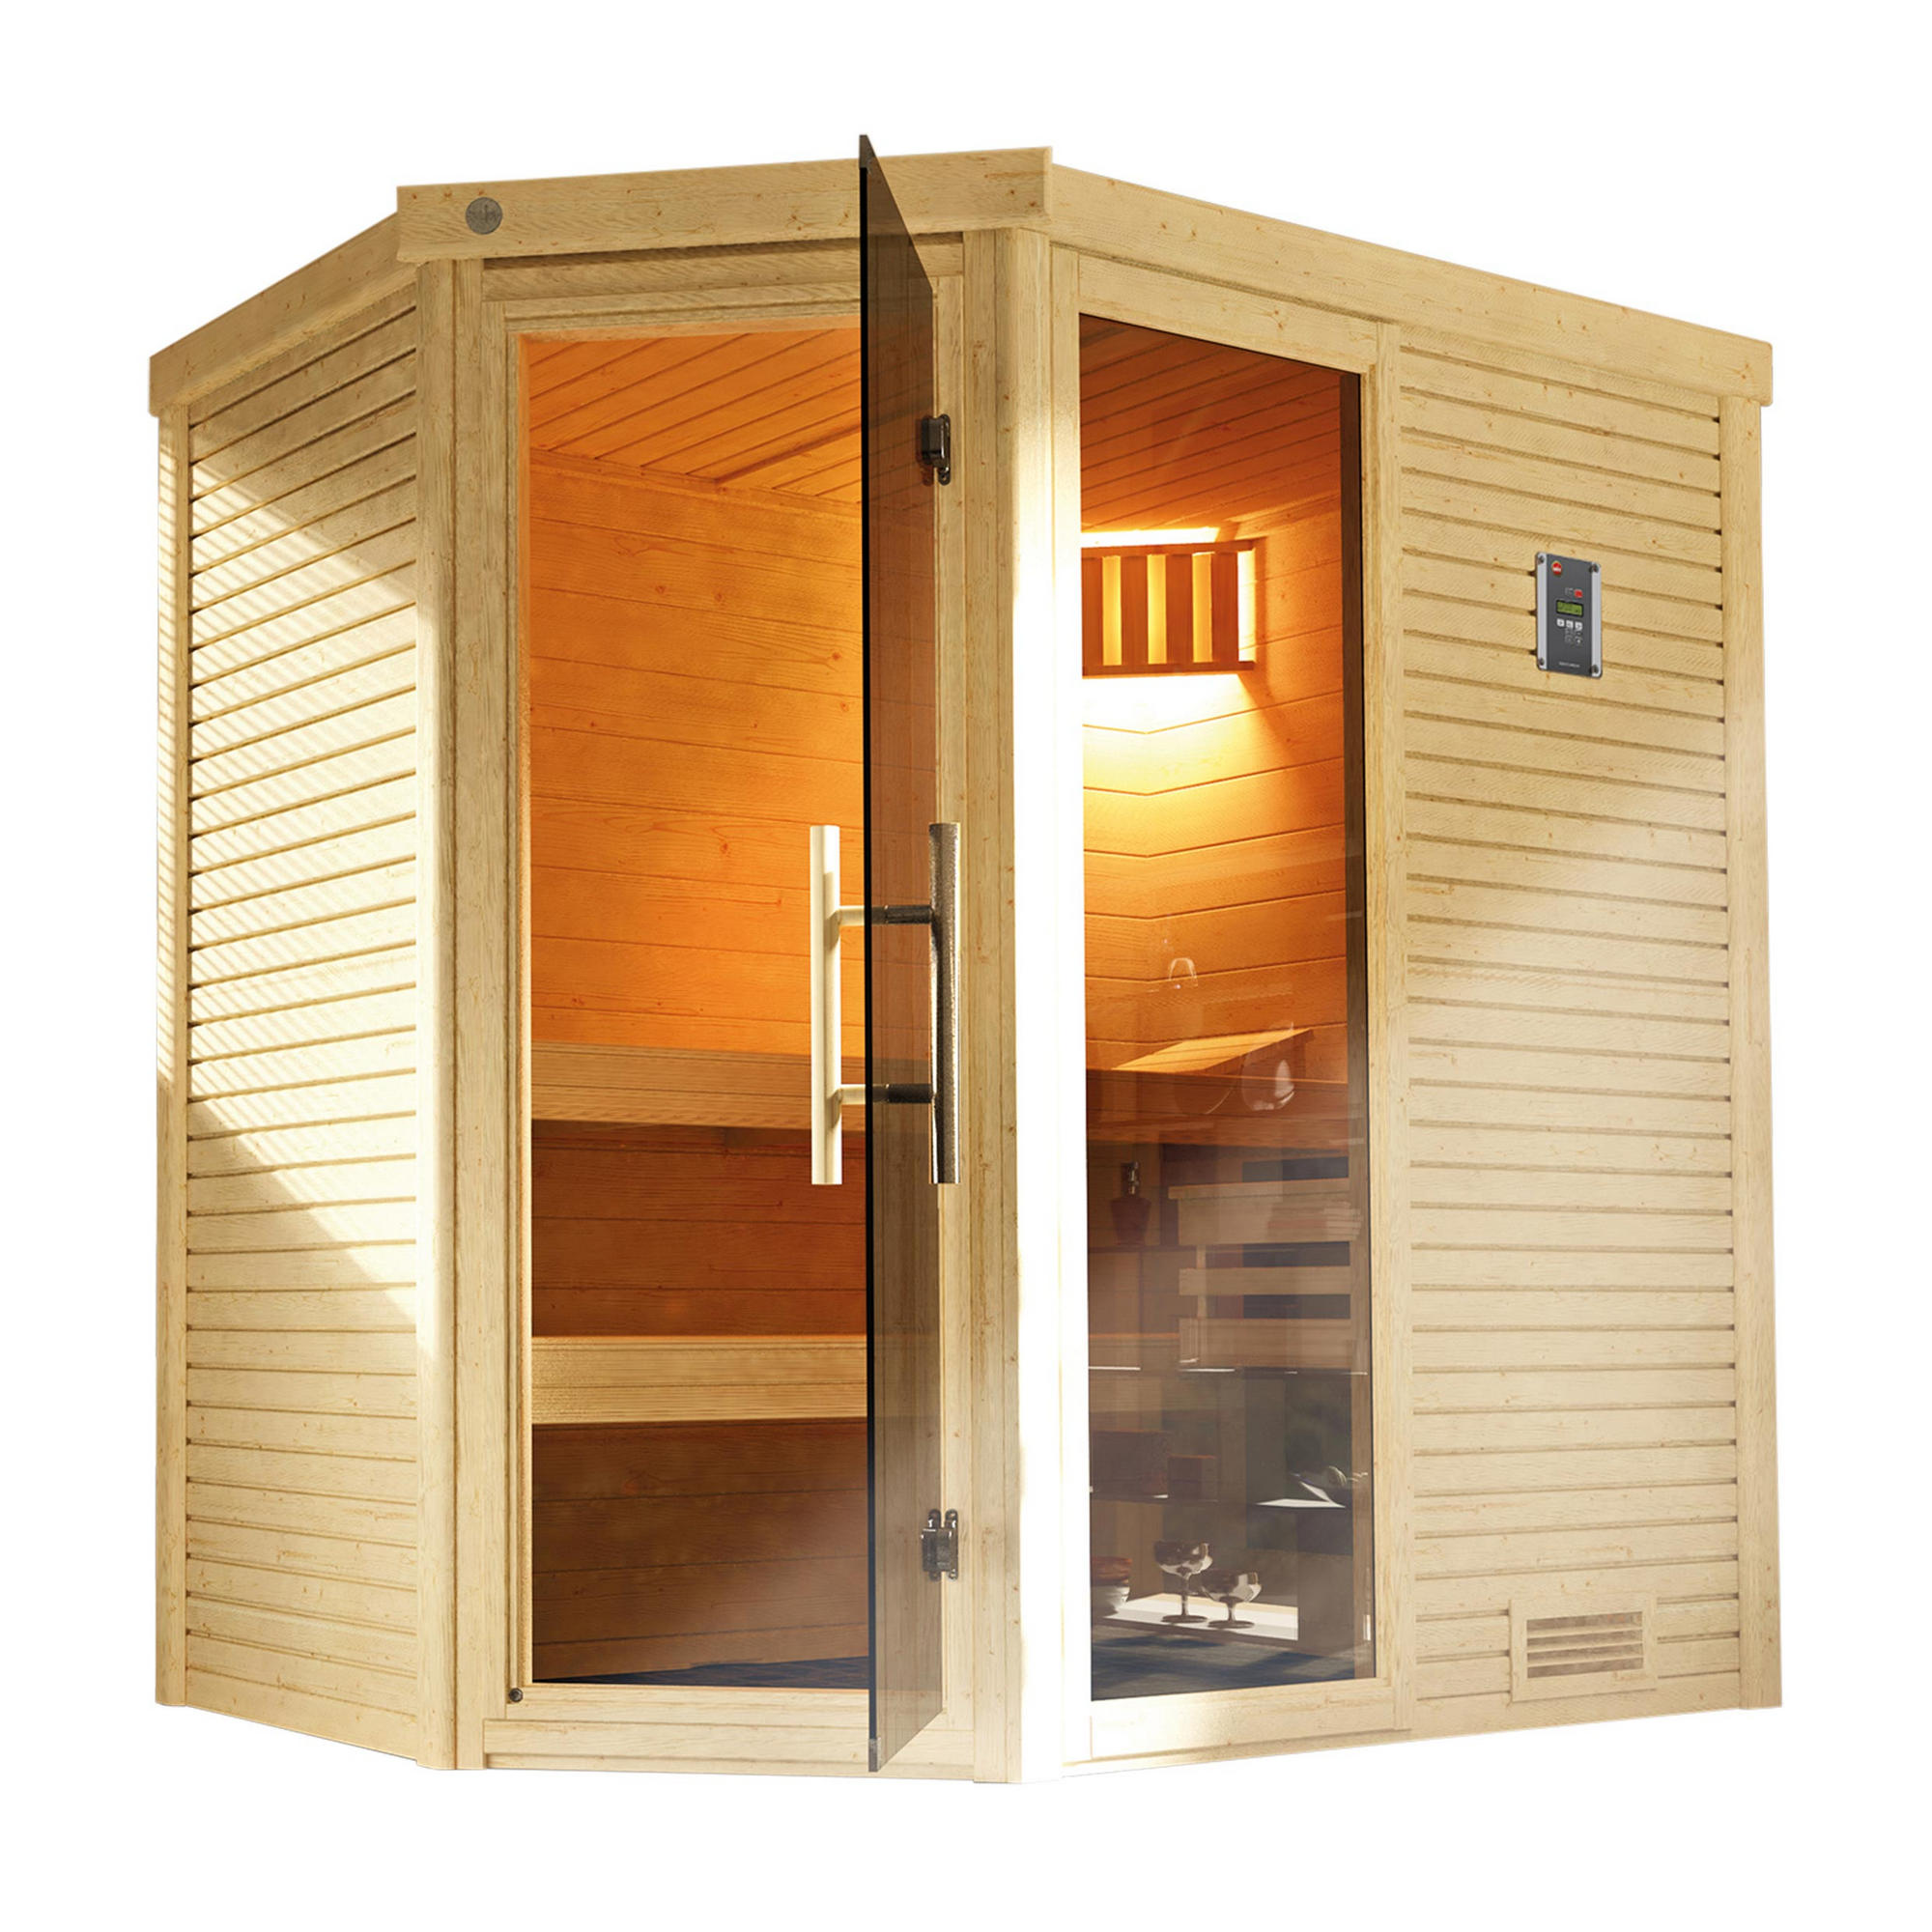 Design-Sauna 'Cubilis 1' mit 7,5 kW OS-Ofenset, Steuerung, Glastür, Fenster 198 x 148 x 205 cm + product picture